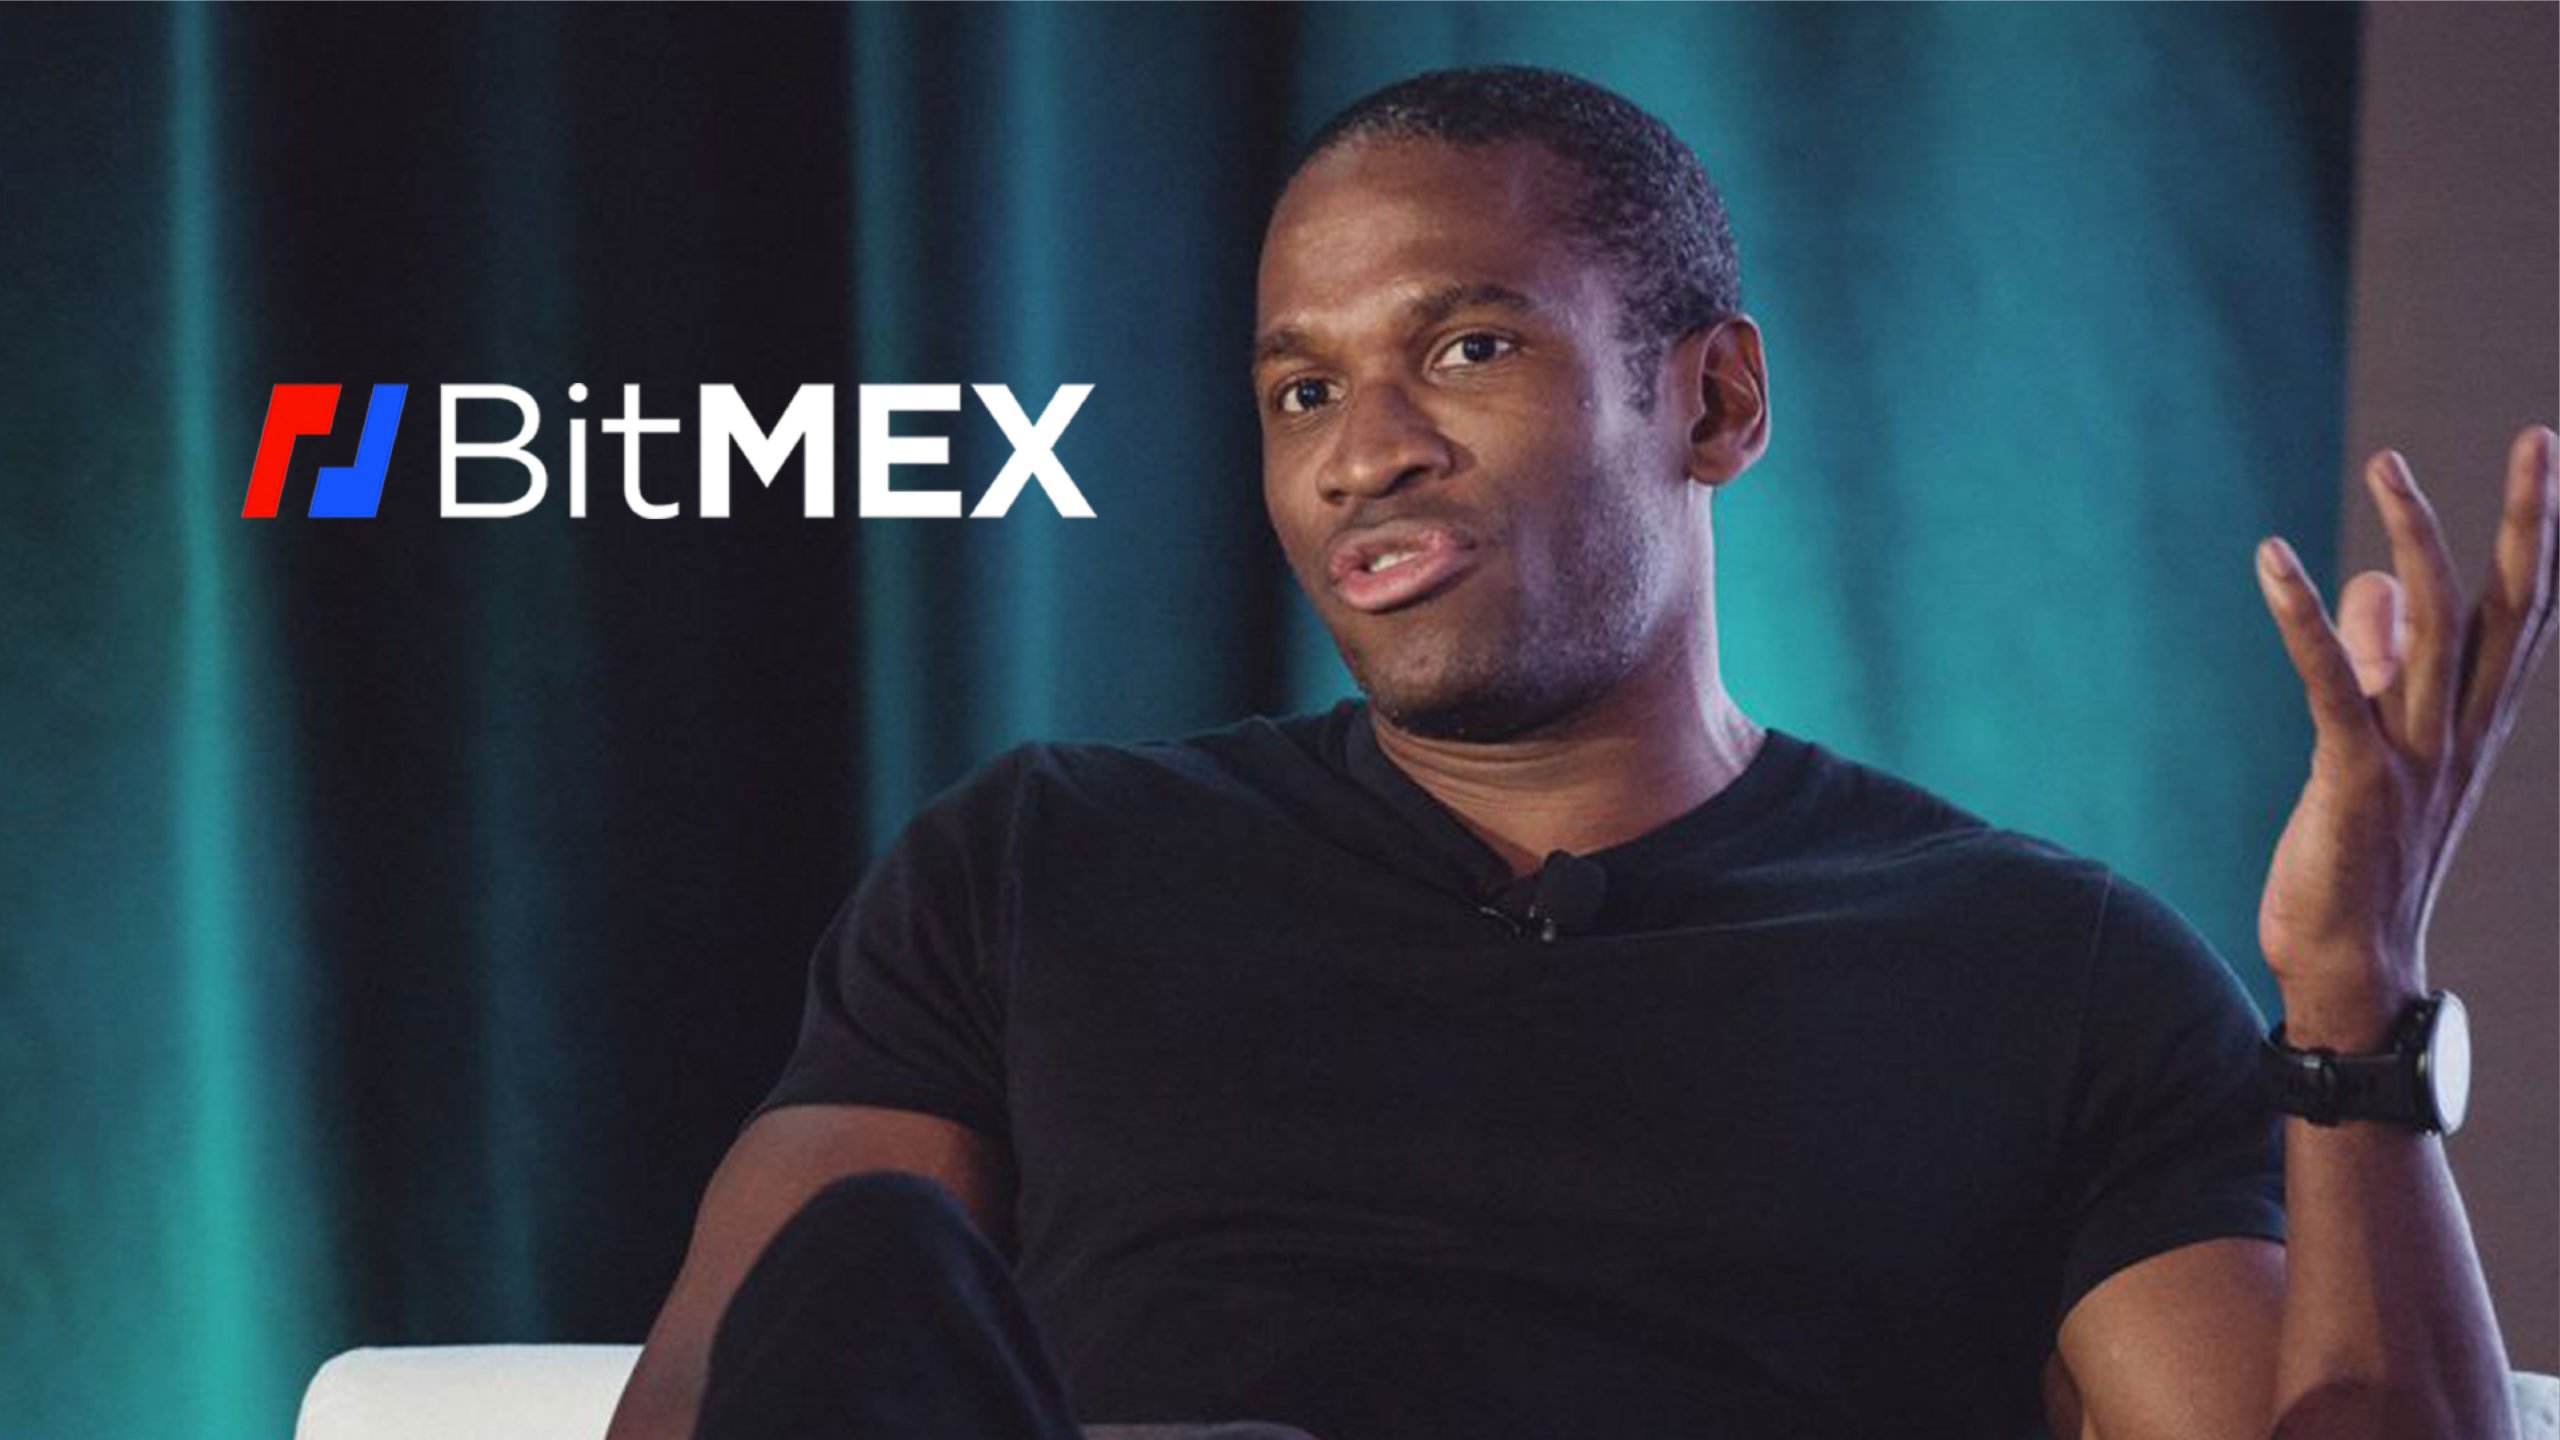 Генеральный директор BitMEX Артур Хейс рассказал о сделанных прогнозах о том, что в следующем десятилетии будет крупный финансовый кризис